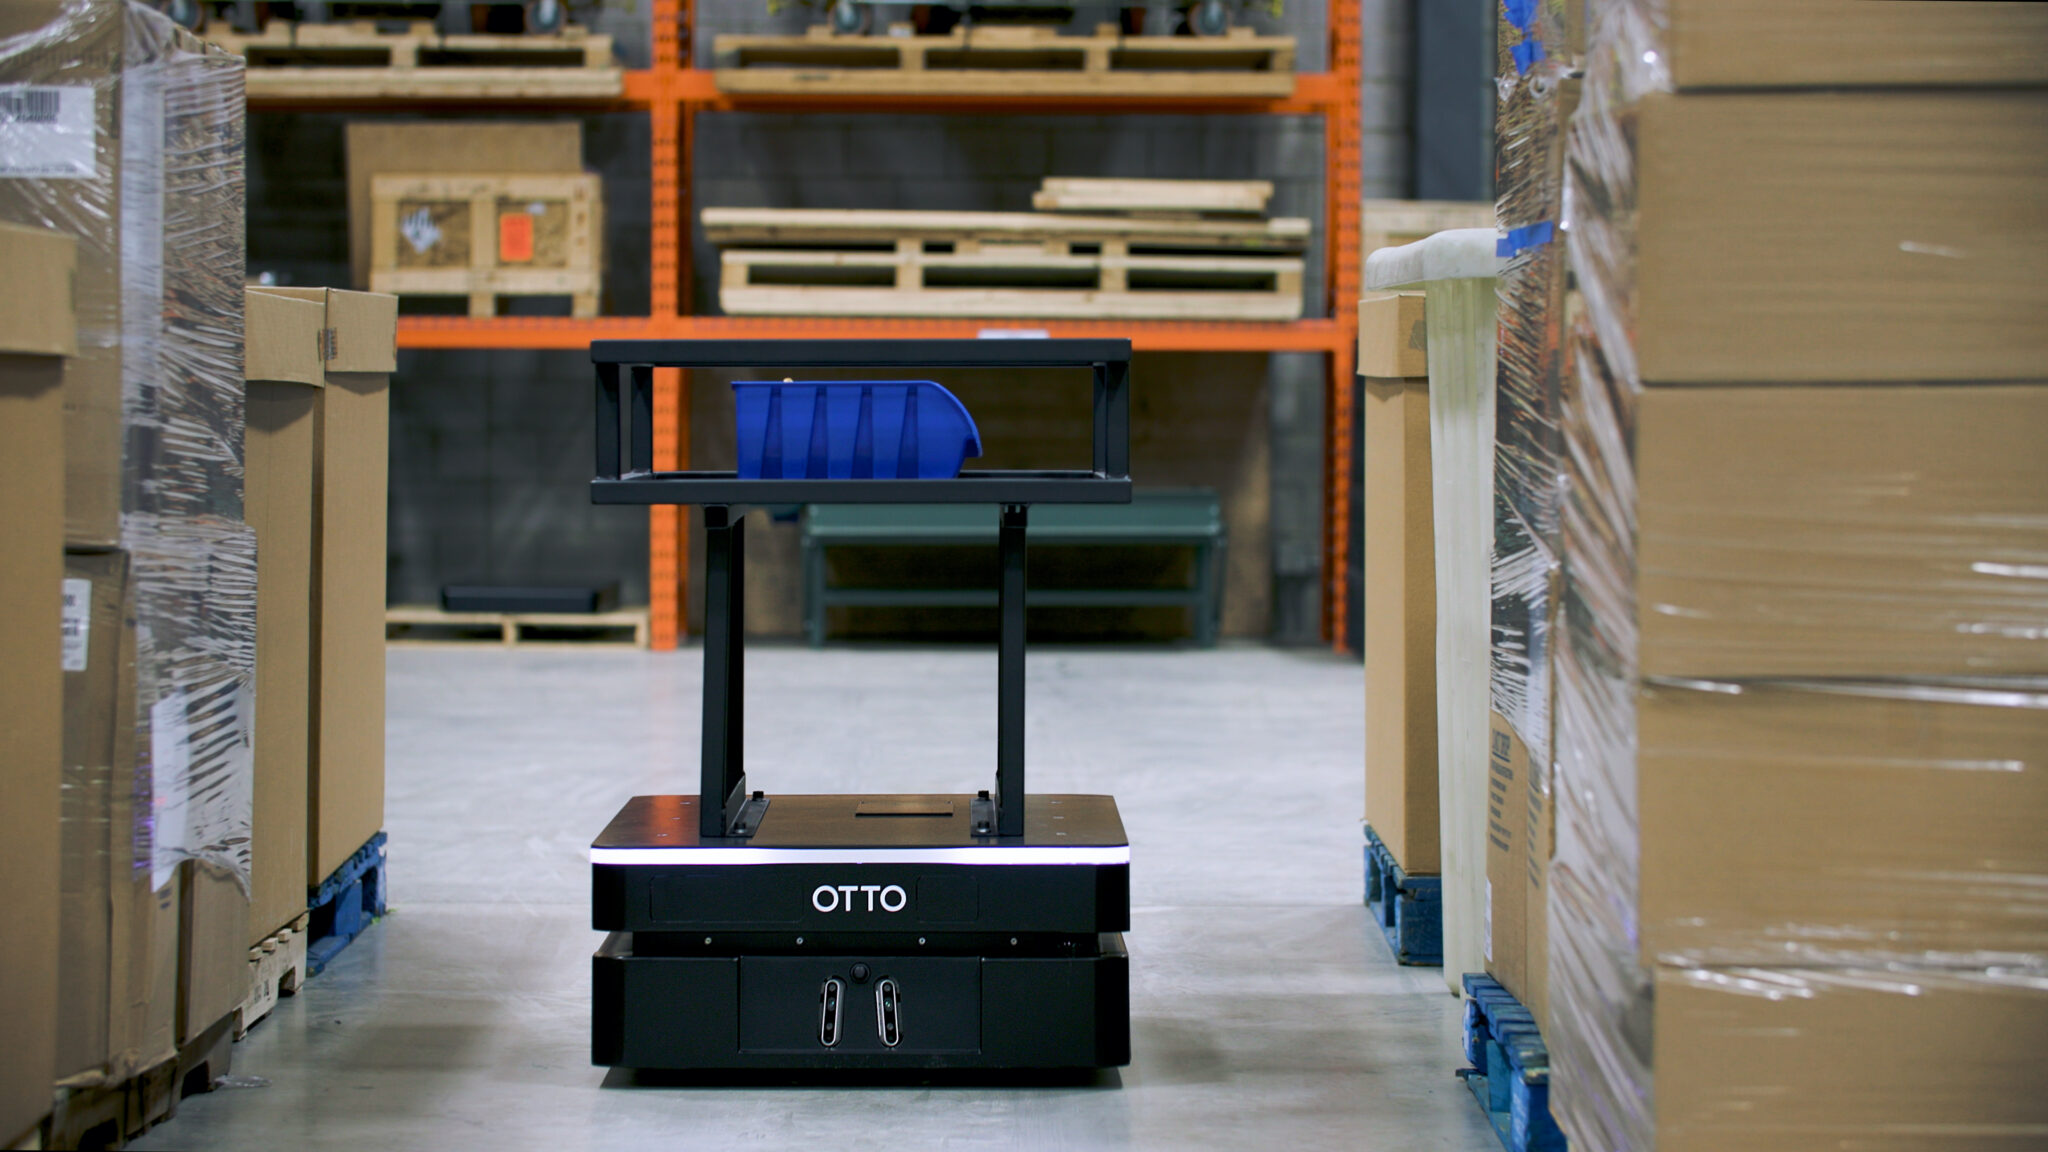 OTTO Motors 600 autonomous mobile robot